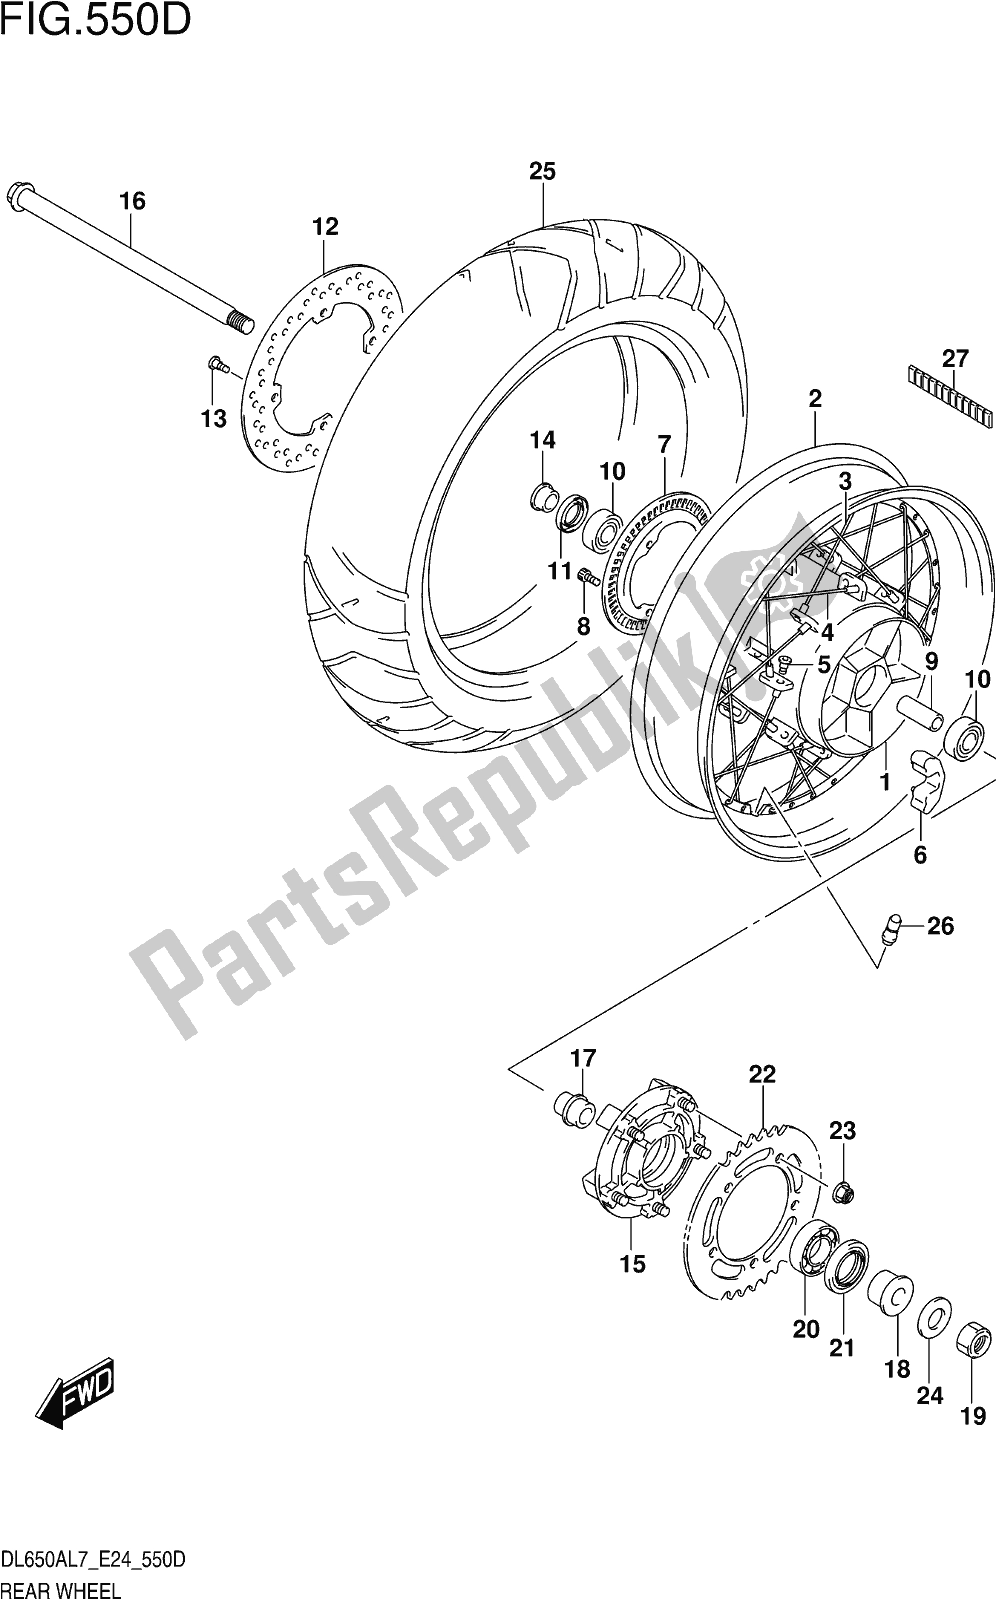 Alle onderdelen voor de Fig. 550d Rear Wheel (dl650xauel7 E24) van de Suzuki DL 650 Xaue V Strom 2017